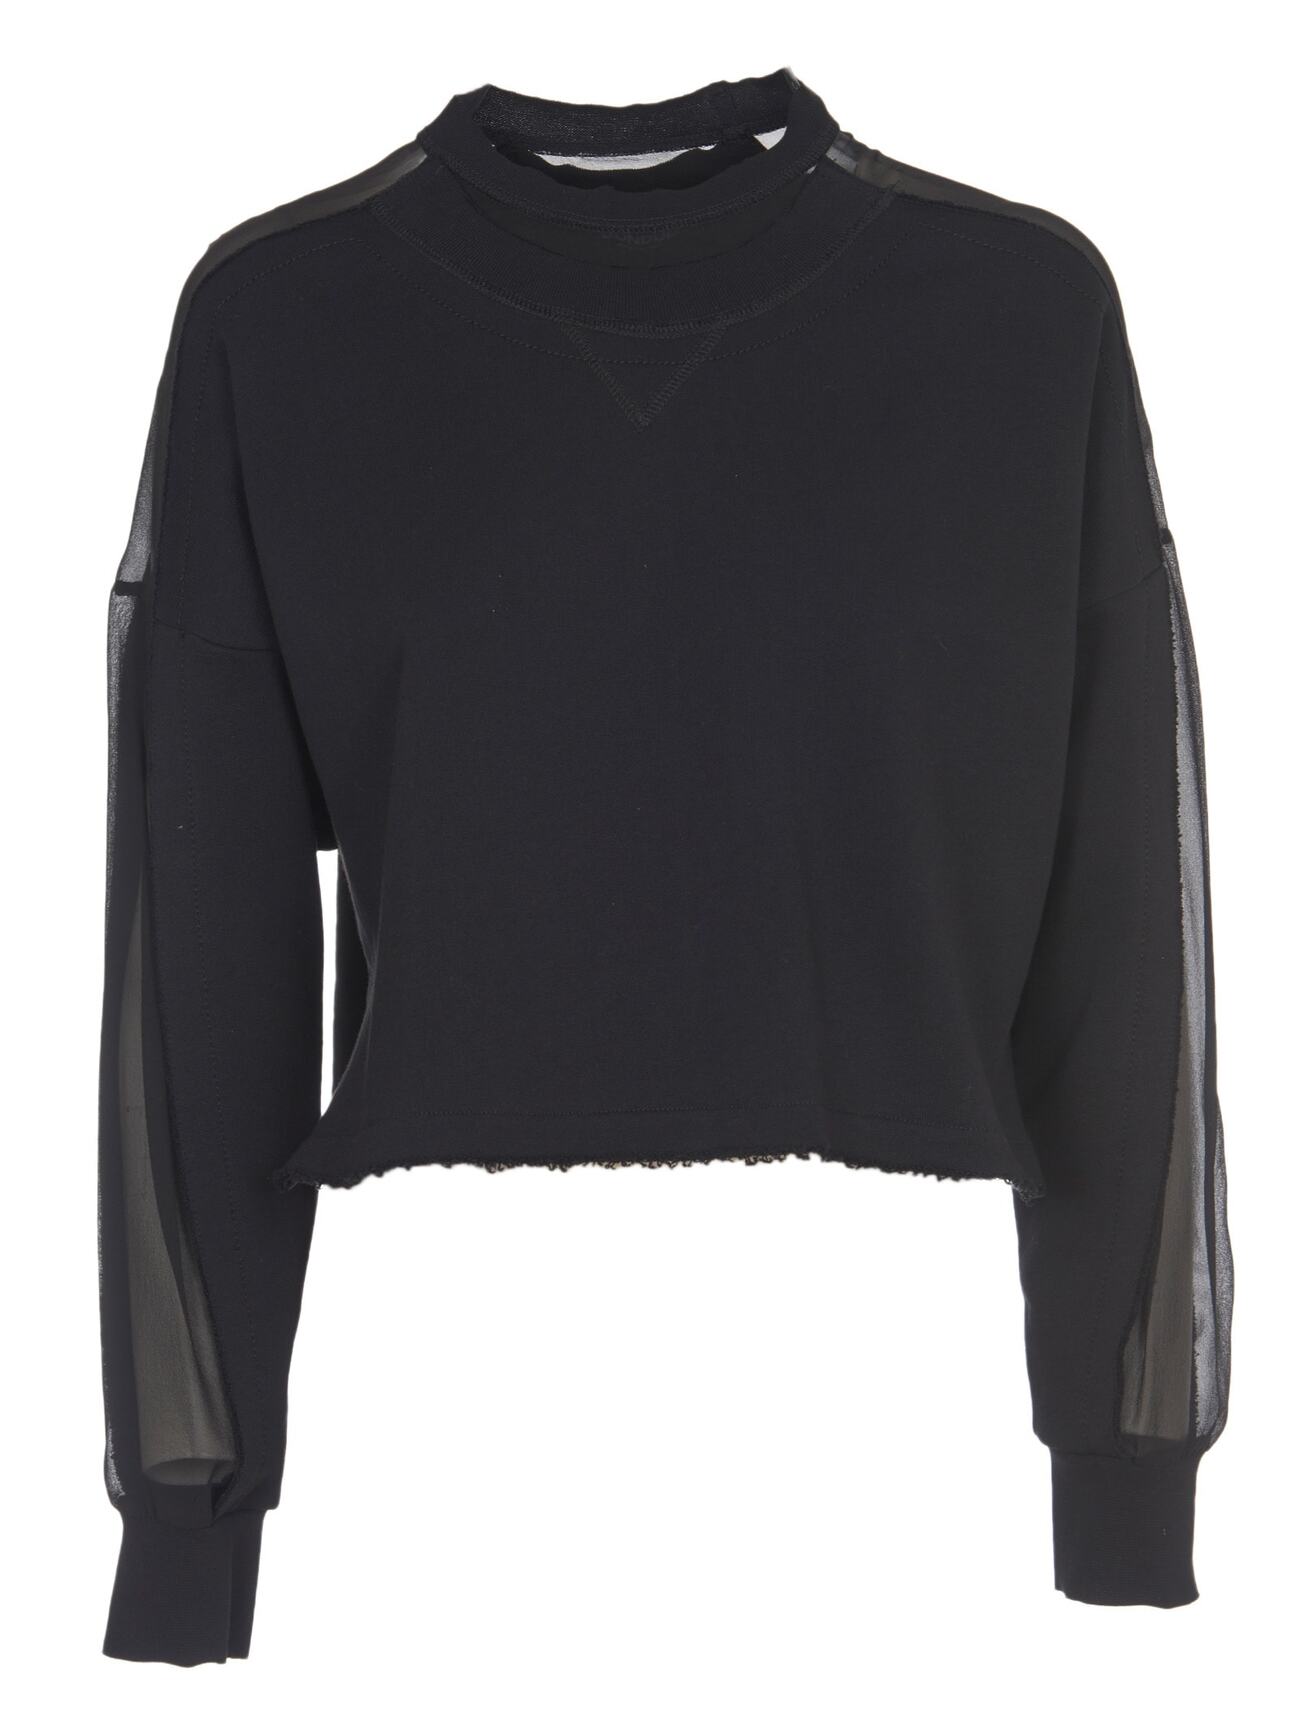 Dondup Black Cropped Sweatshirt